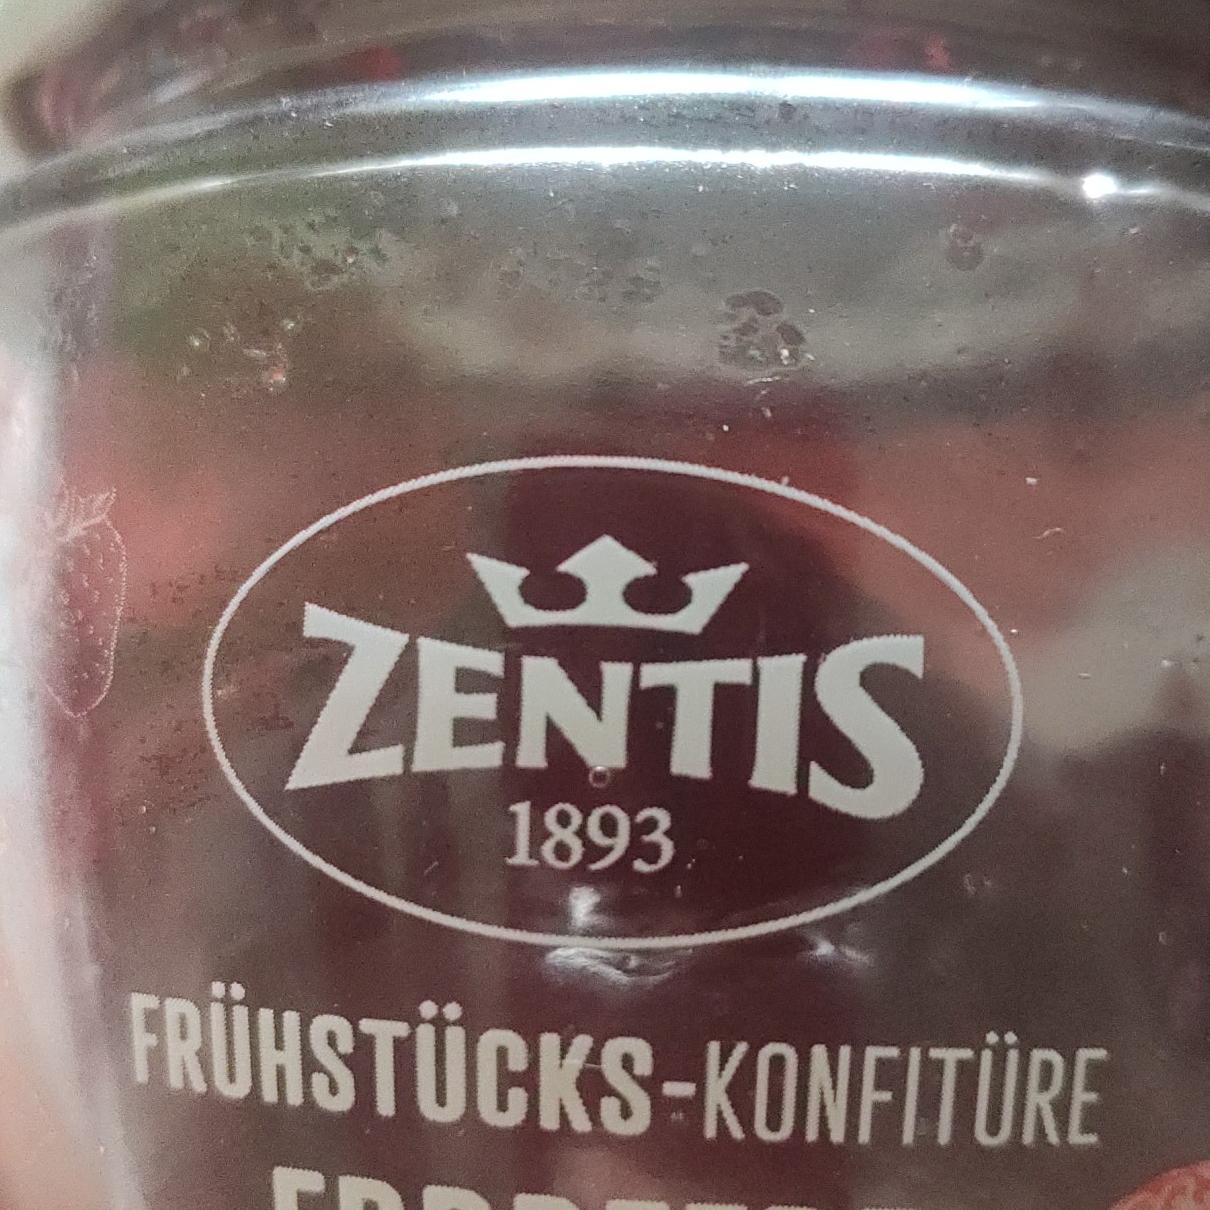 Фото - конфитюр клубничный Frühstück-konfitüre Zentis